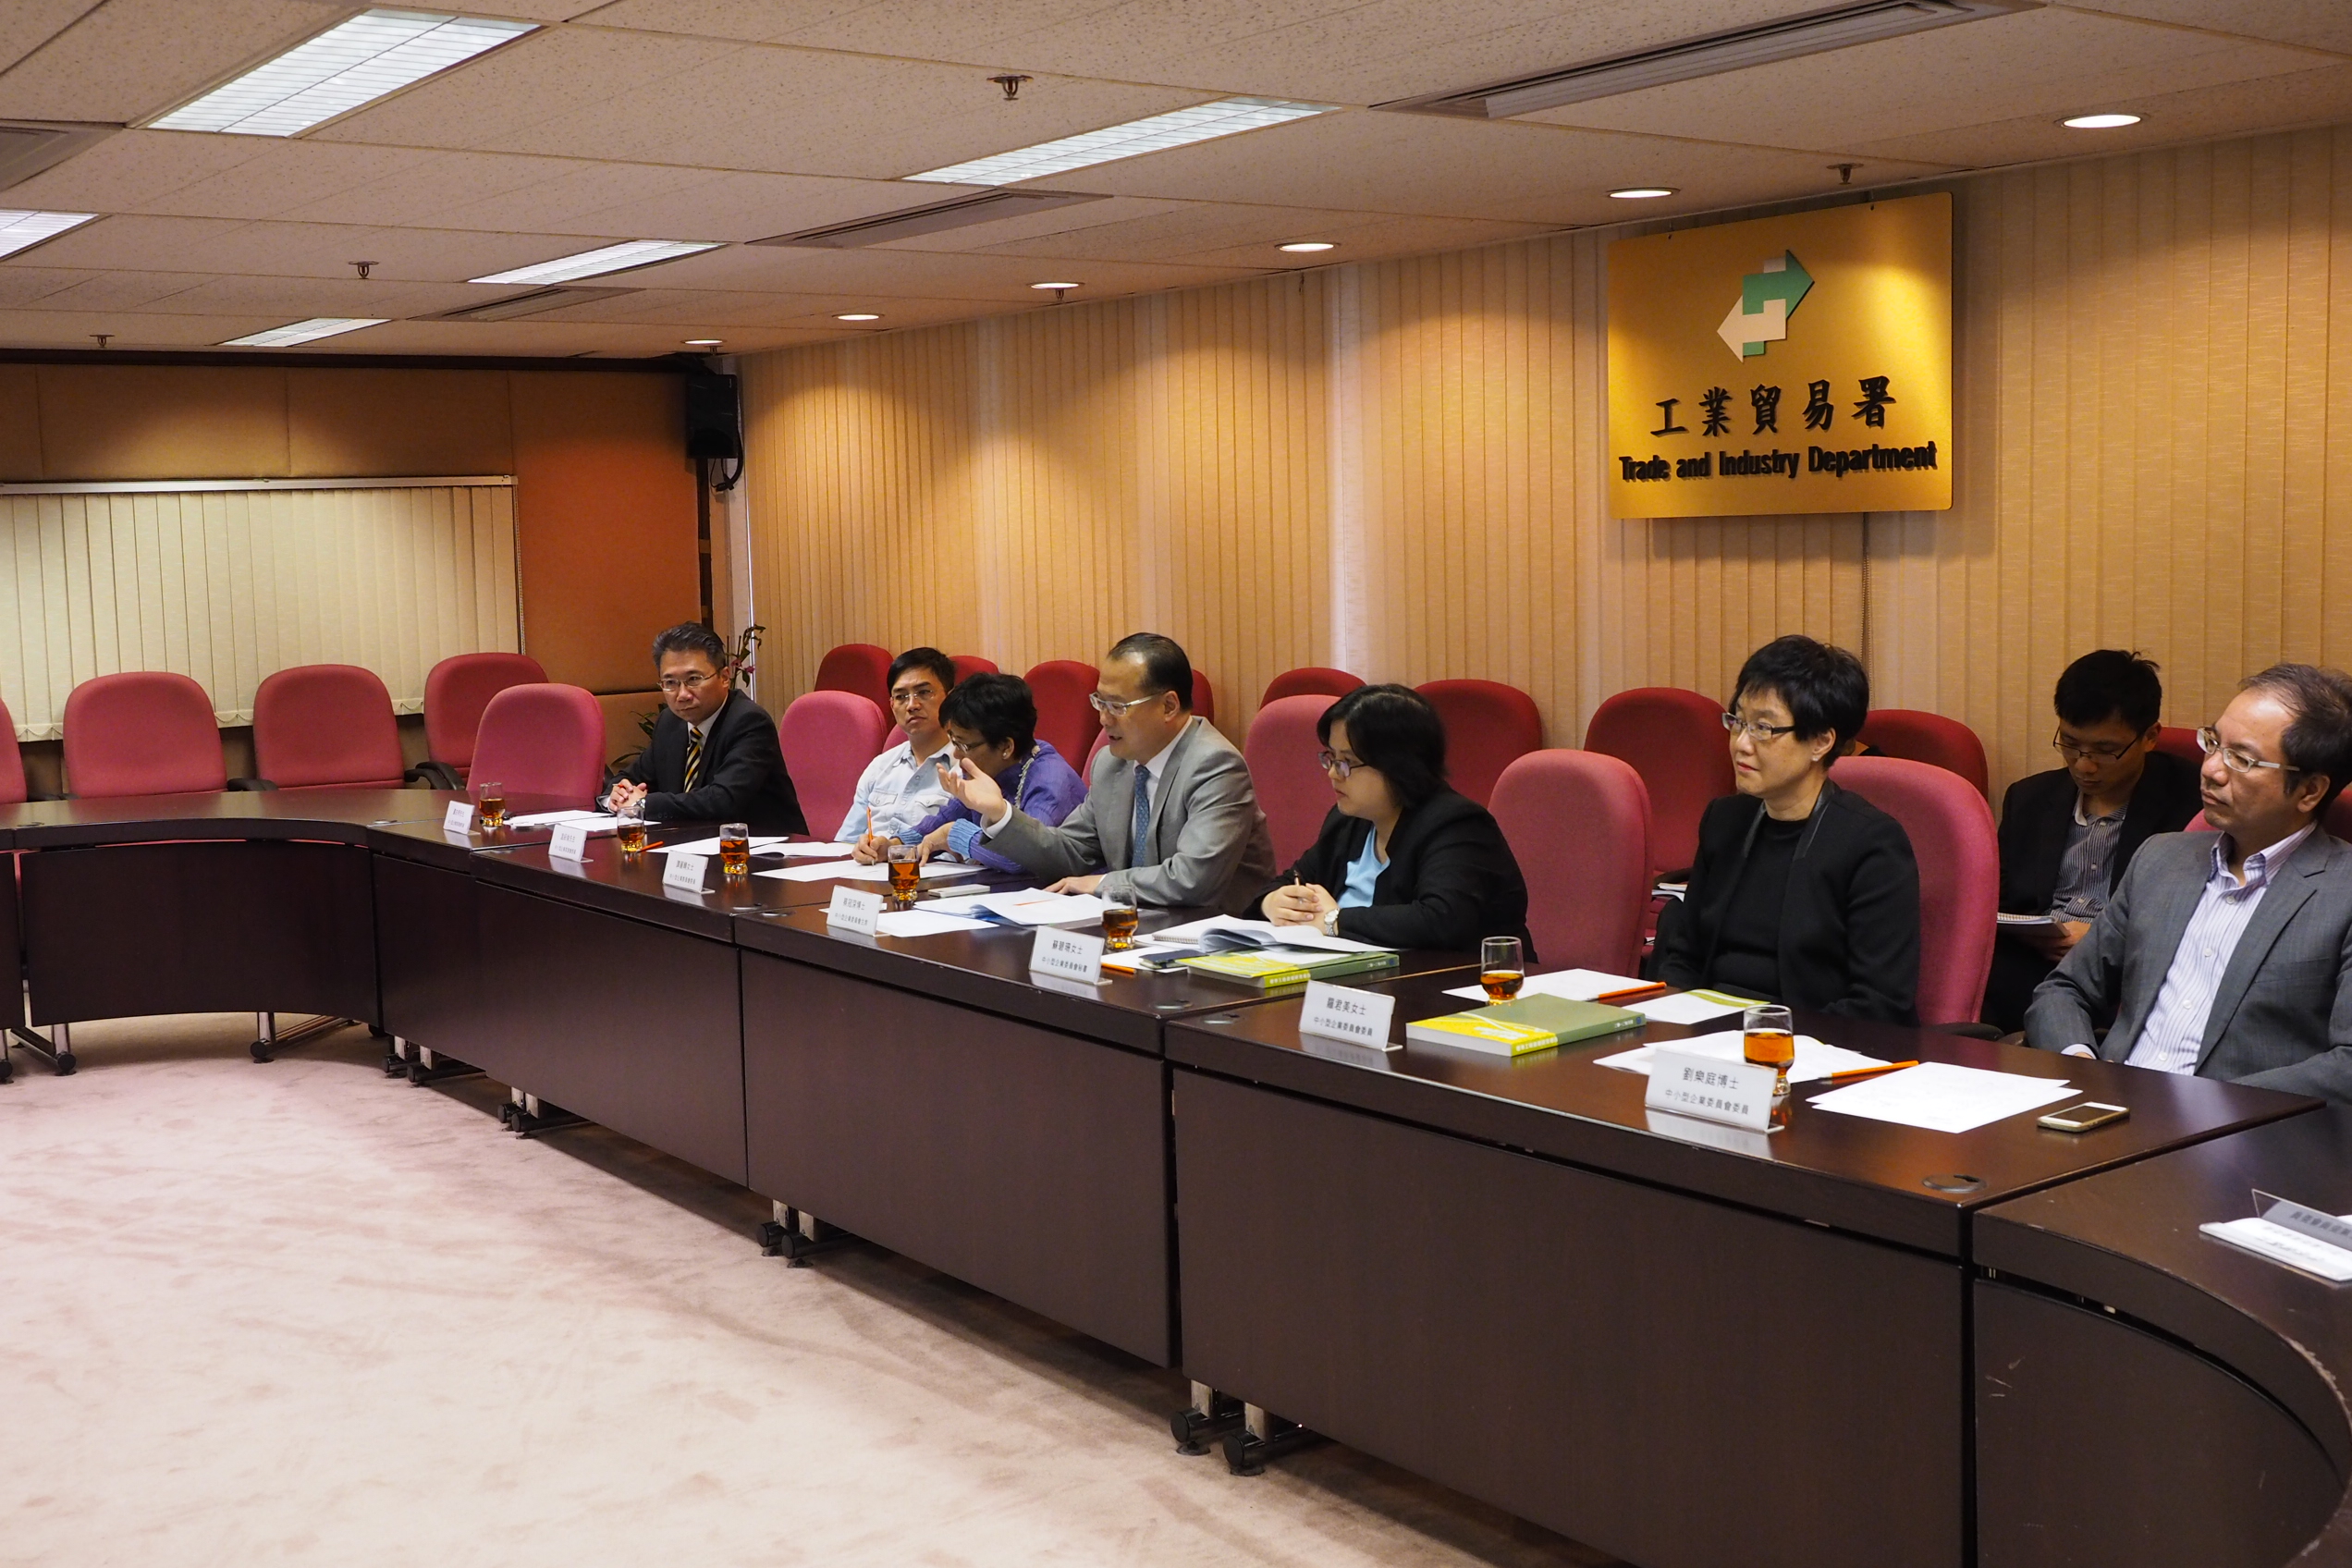 图         片         2 : 中         小         型         企         业         委         员         会         于         2014 年         5 月         2 日         与         中         小         企         业         组         织         代         表         会         面         ，         就         标         准         工         时         政         策         交         流         意         见         。        